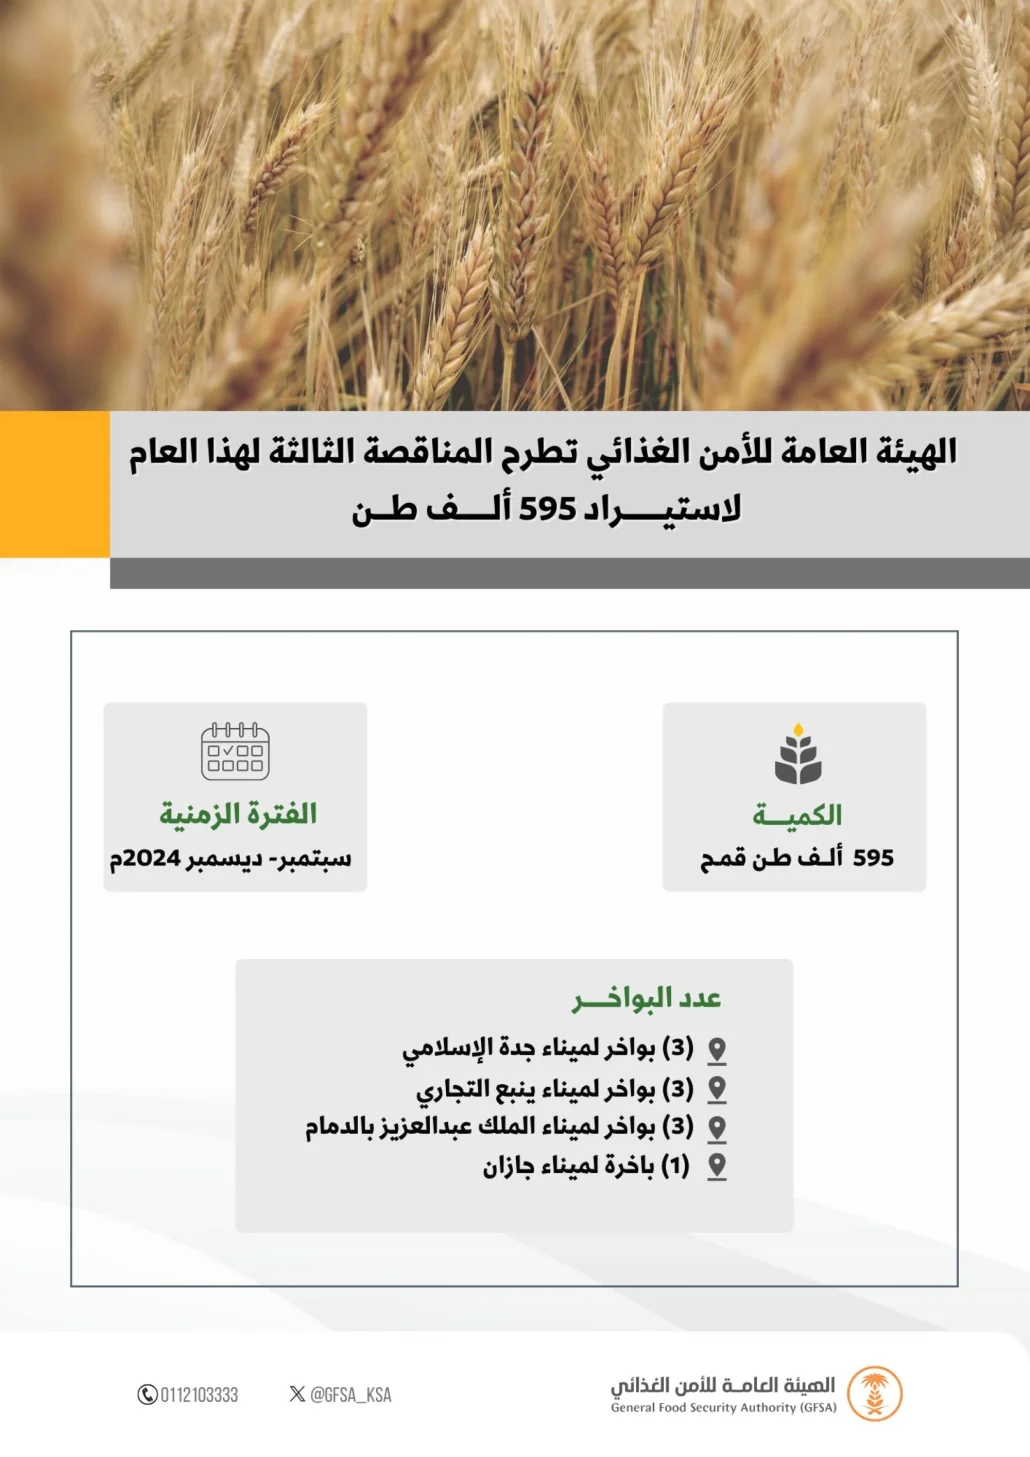 أعلنت الهيئة العامة للأمن الغذائي اليوم عن طرح المناقصة الثالثة لاستيراد القمح